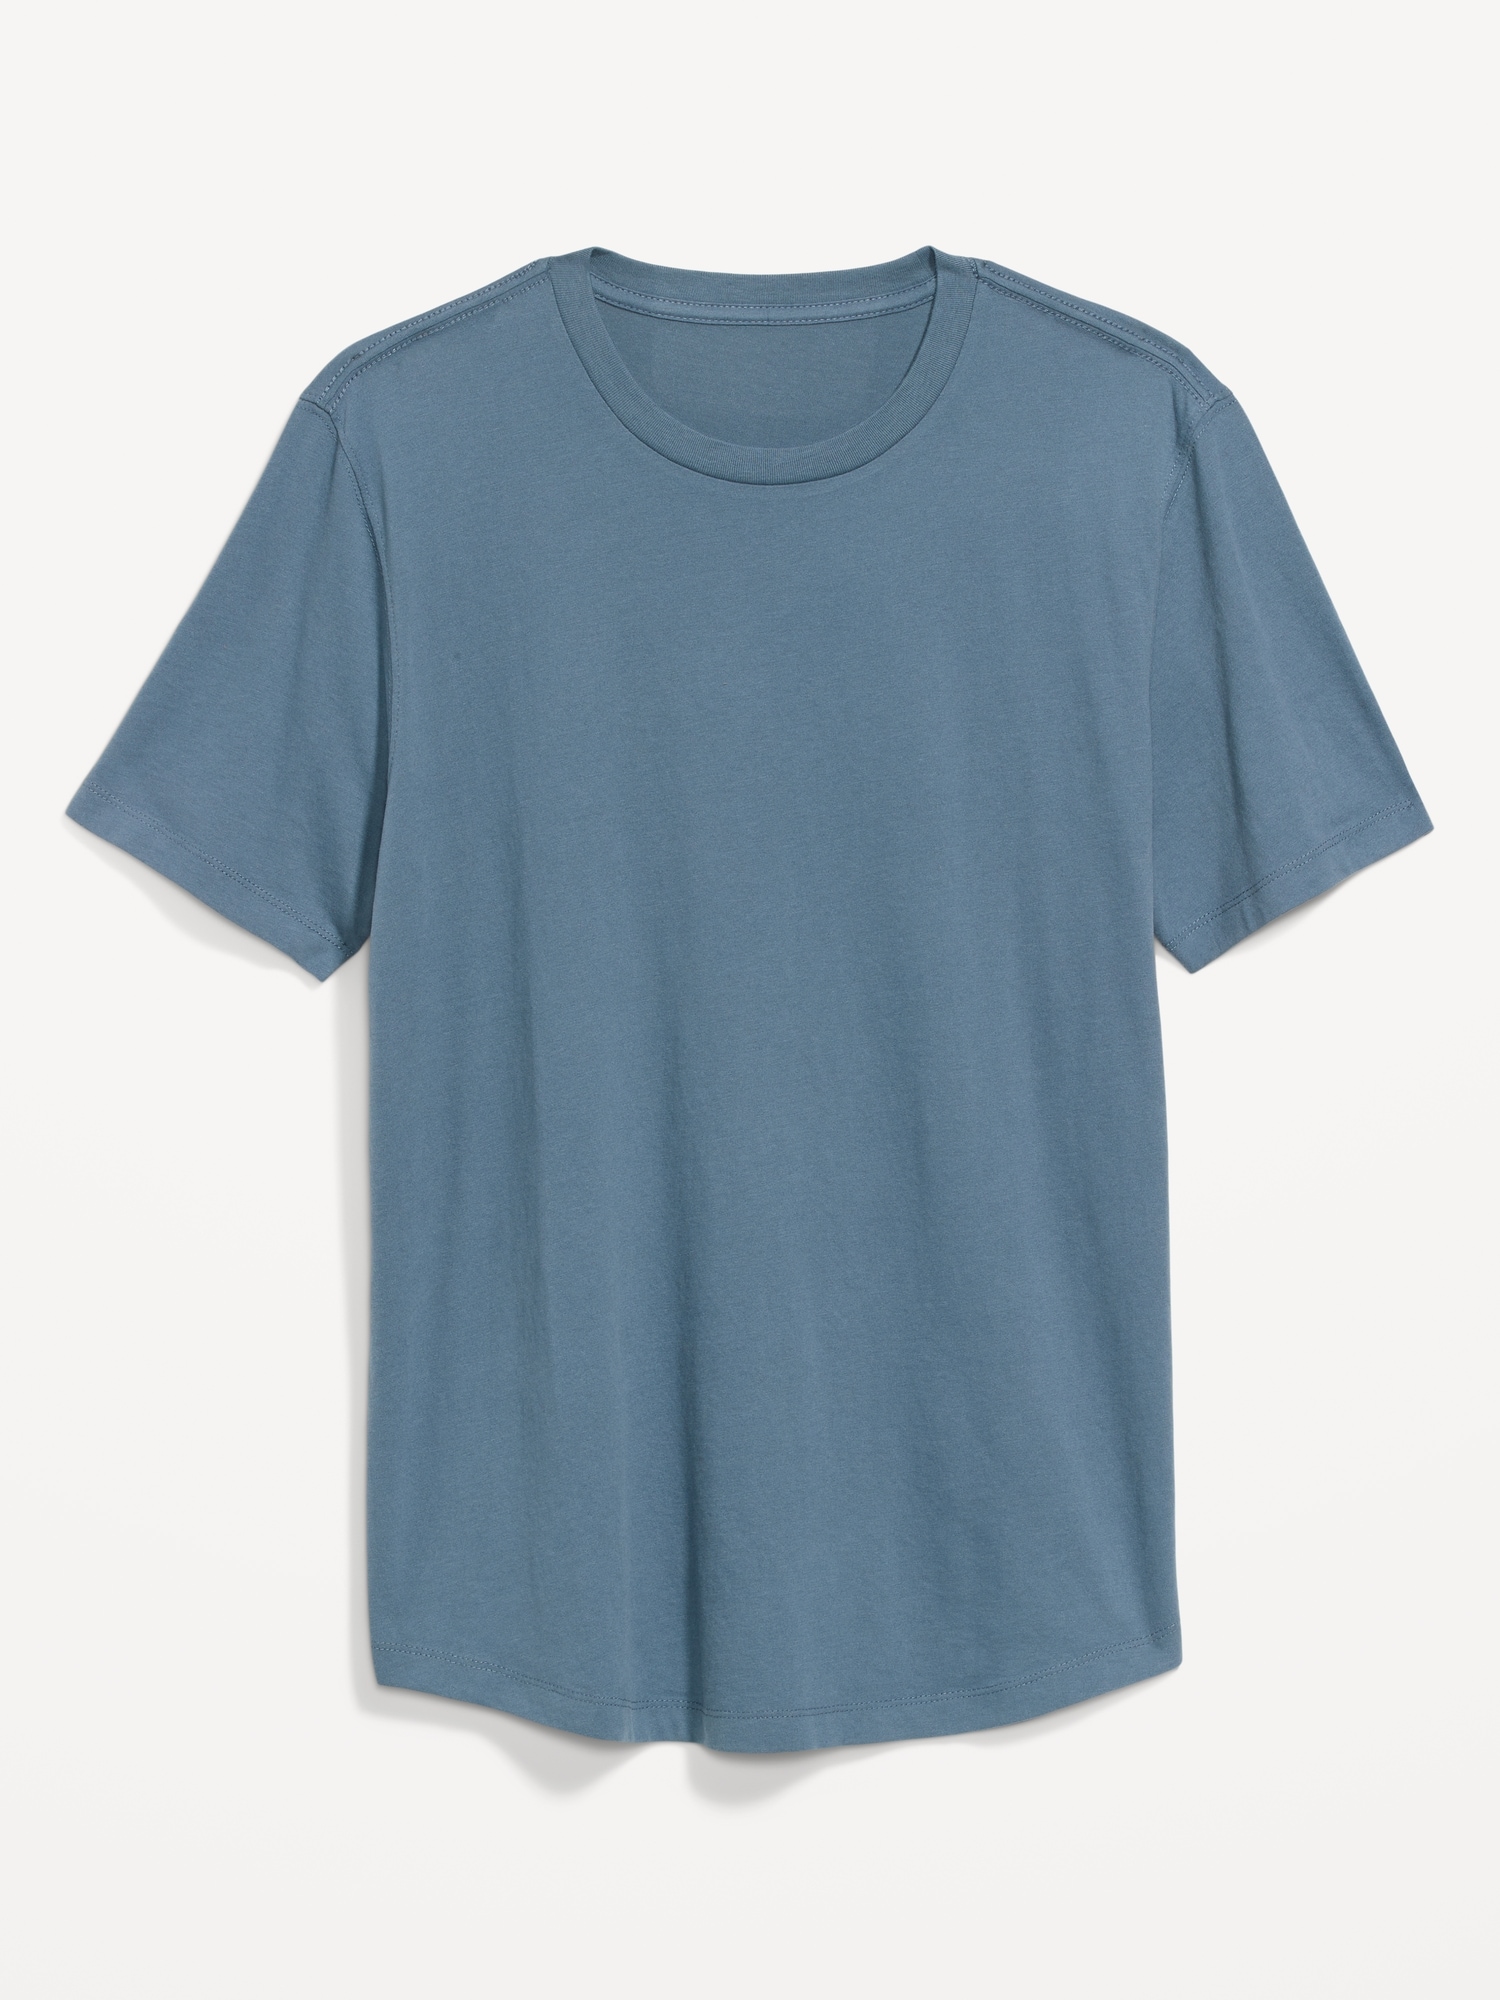 Soft-Washed Curved-Hem T-Shirt 3-Pack